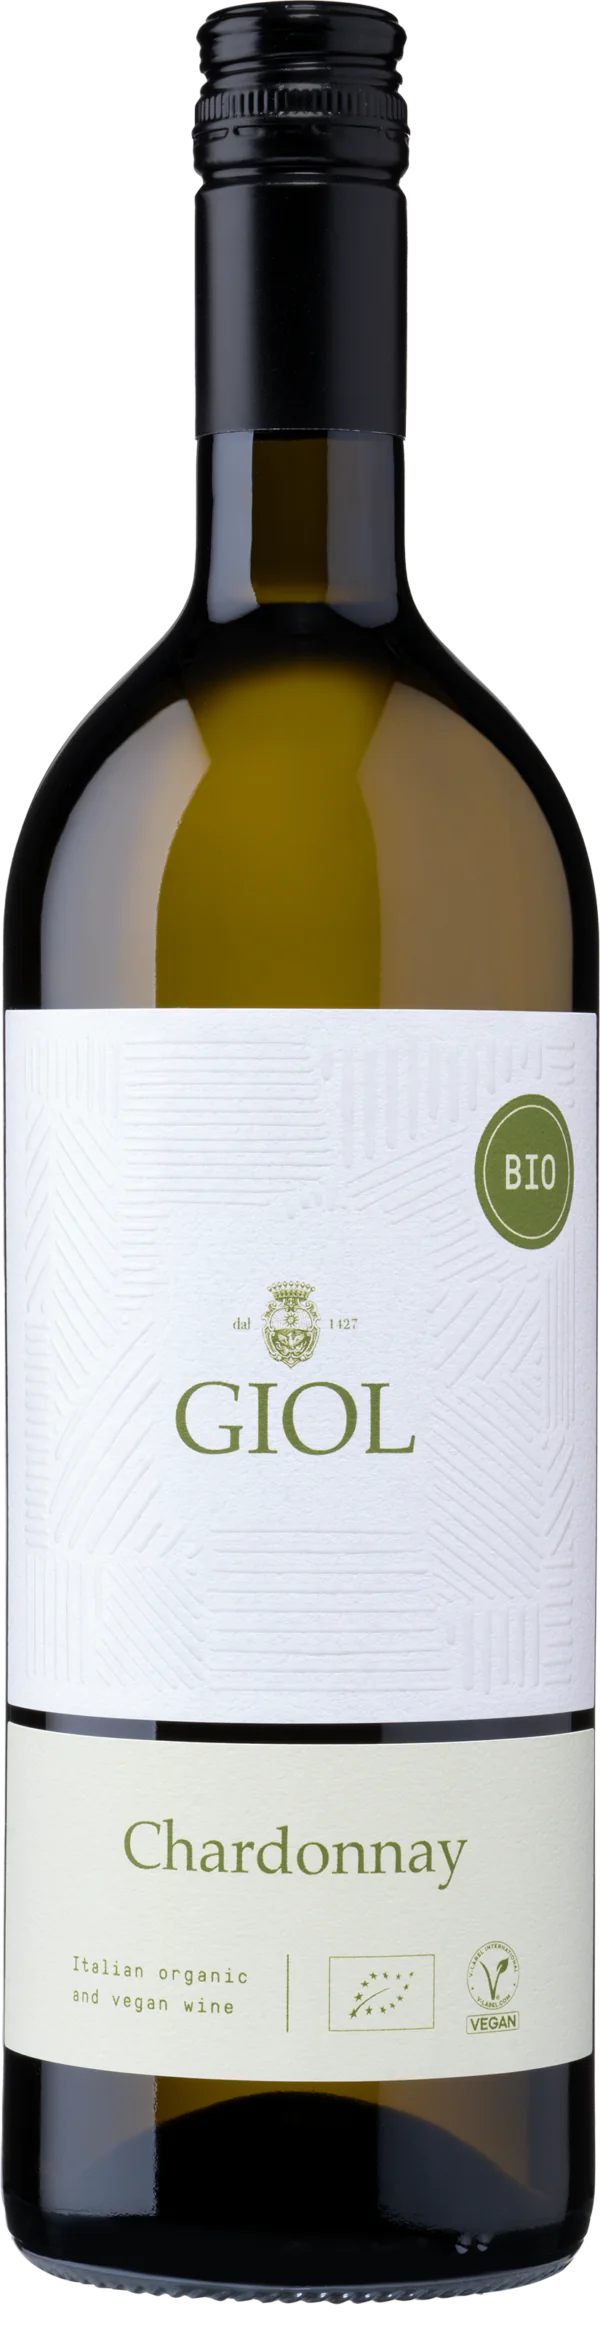 Chardonnay - Giol